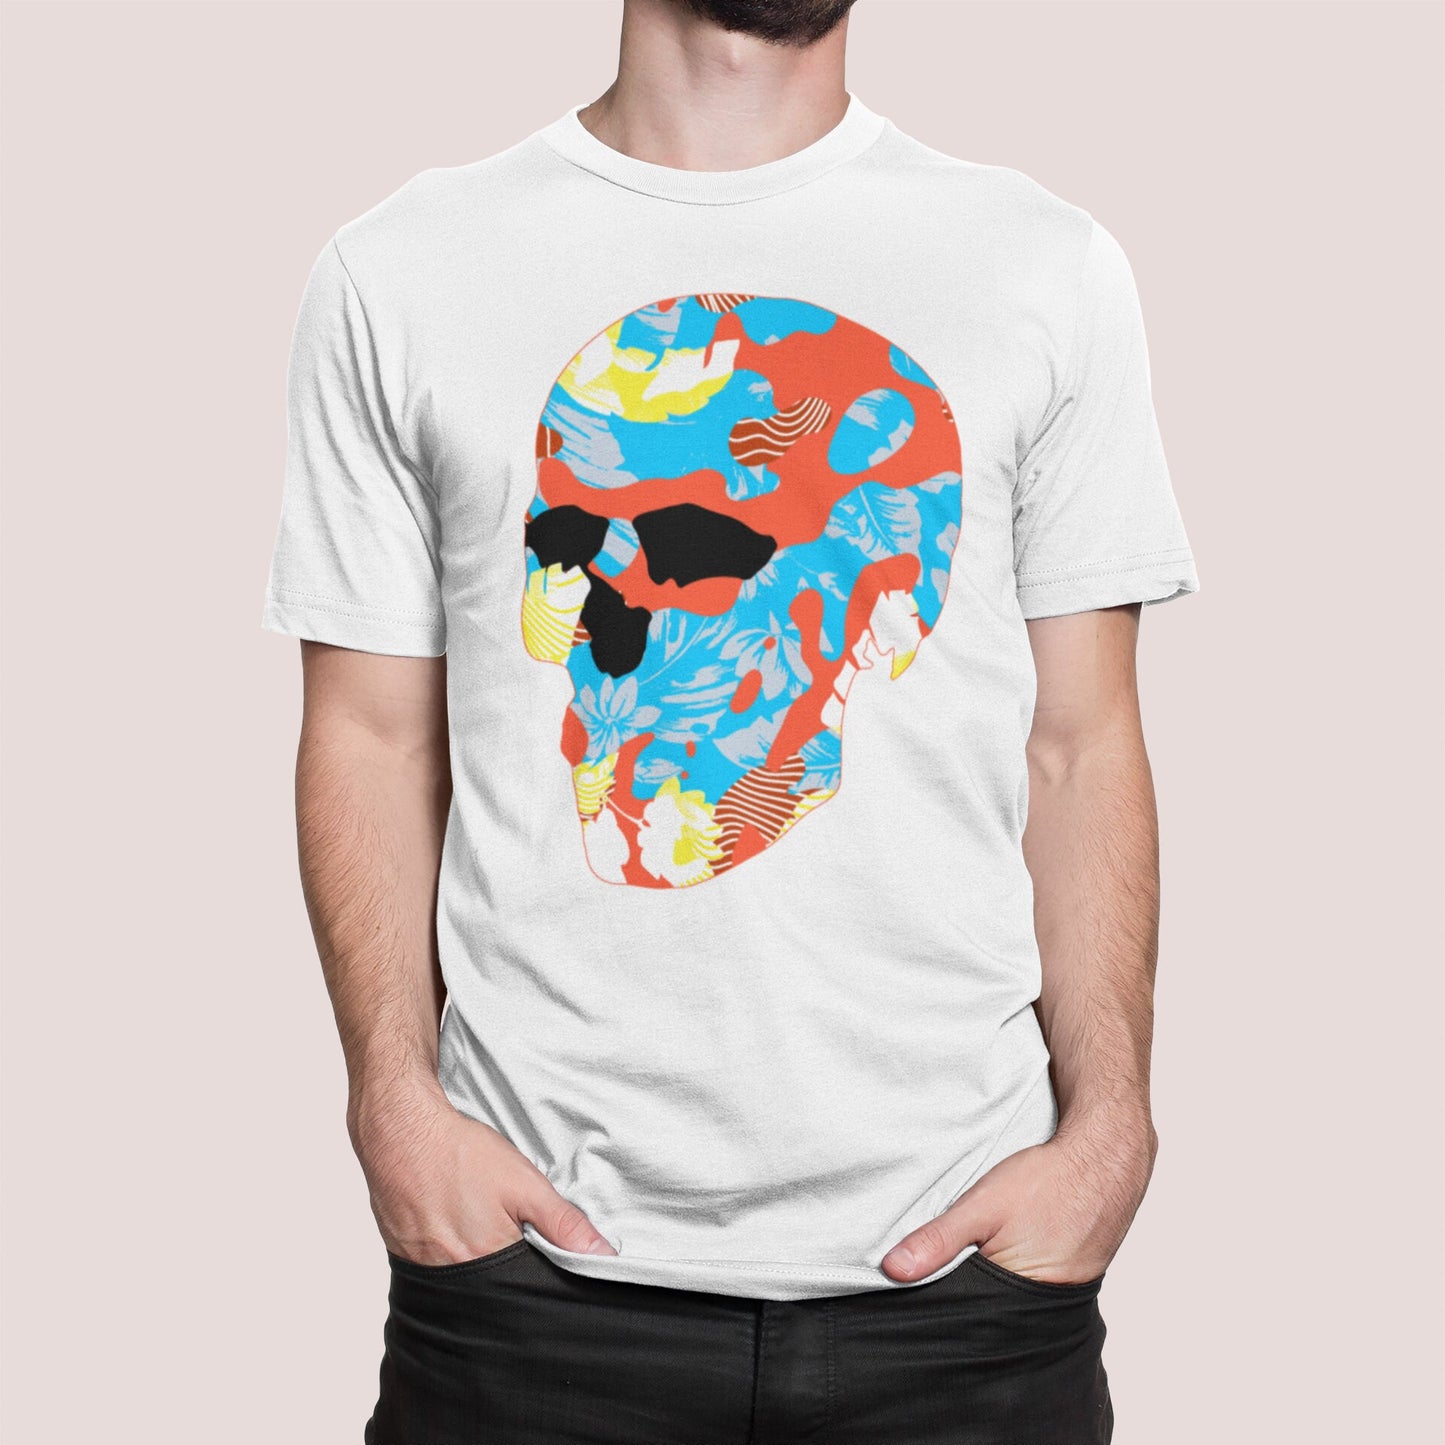 Sugar Skull Men's T-shirt, Skull Print Mens Tshirt, Abstract Sugar Skull Art Shirt, Skull Graphic Tee Gift For Him, Gothic Skull Shirt Gift